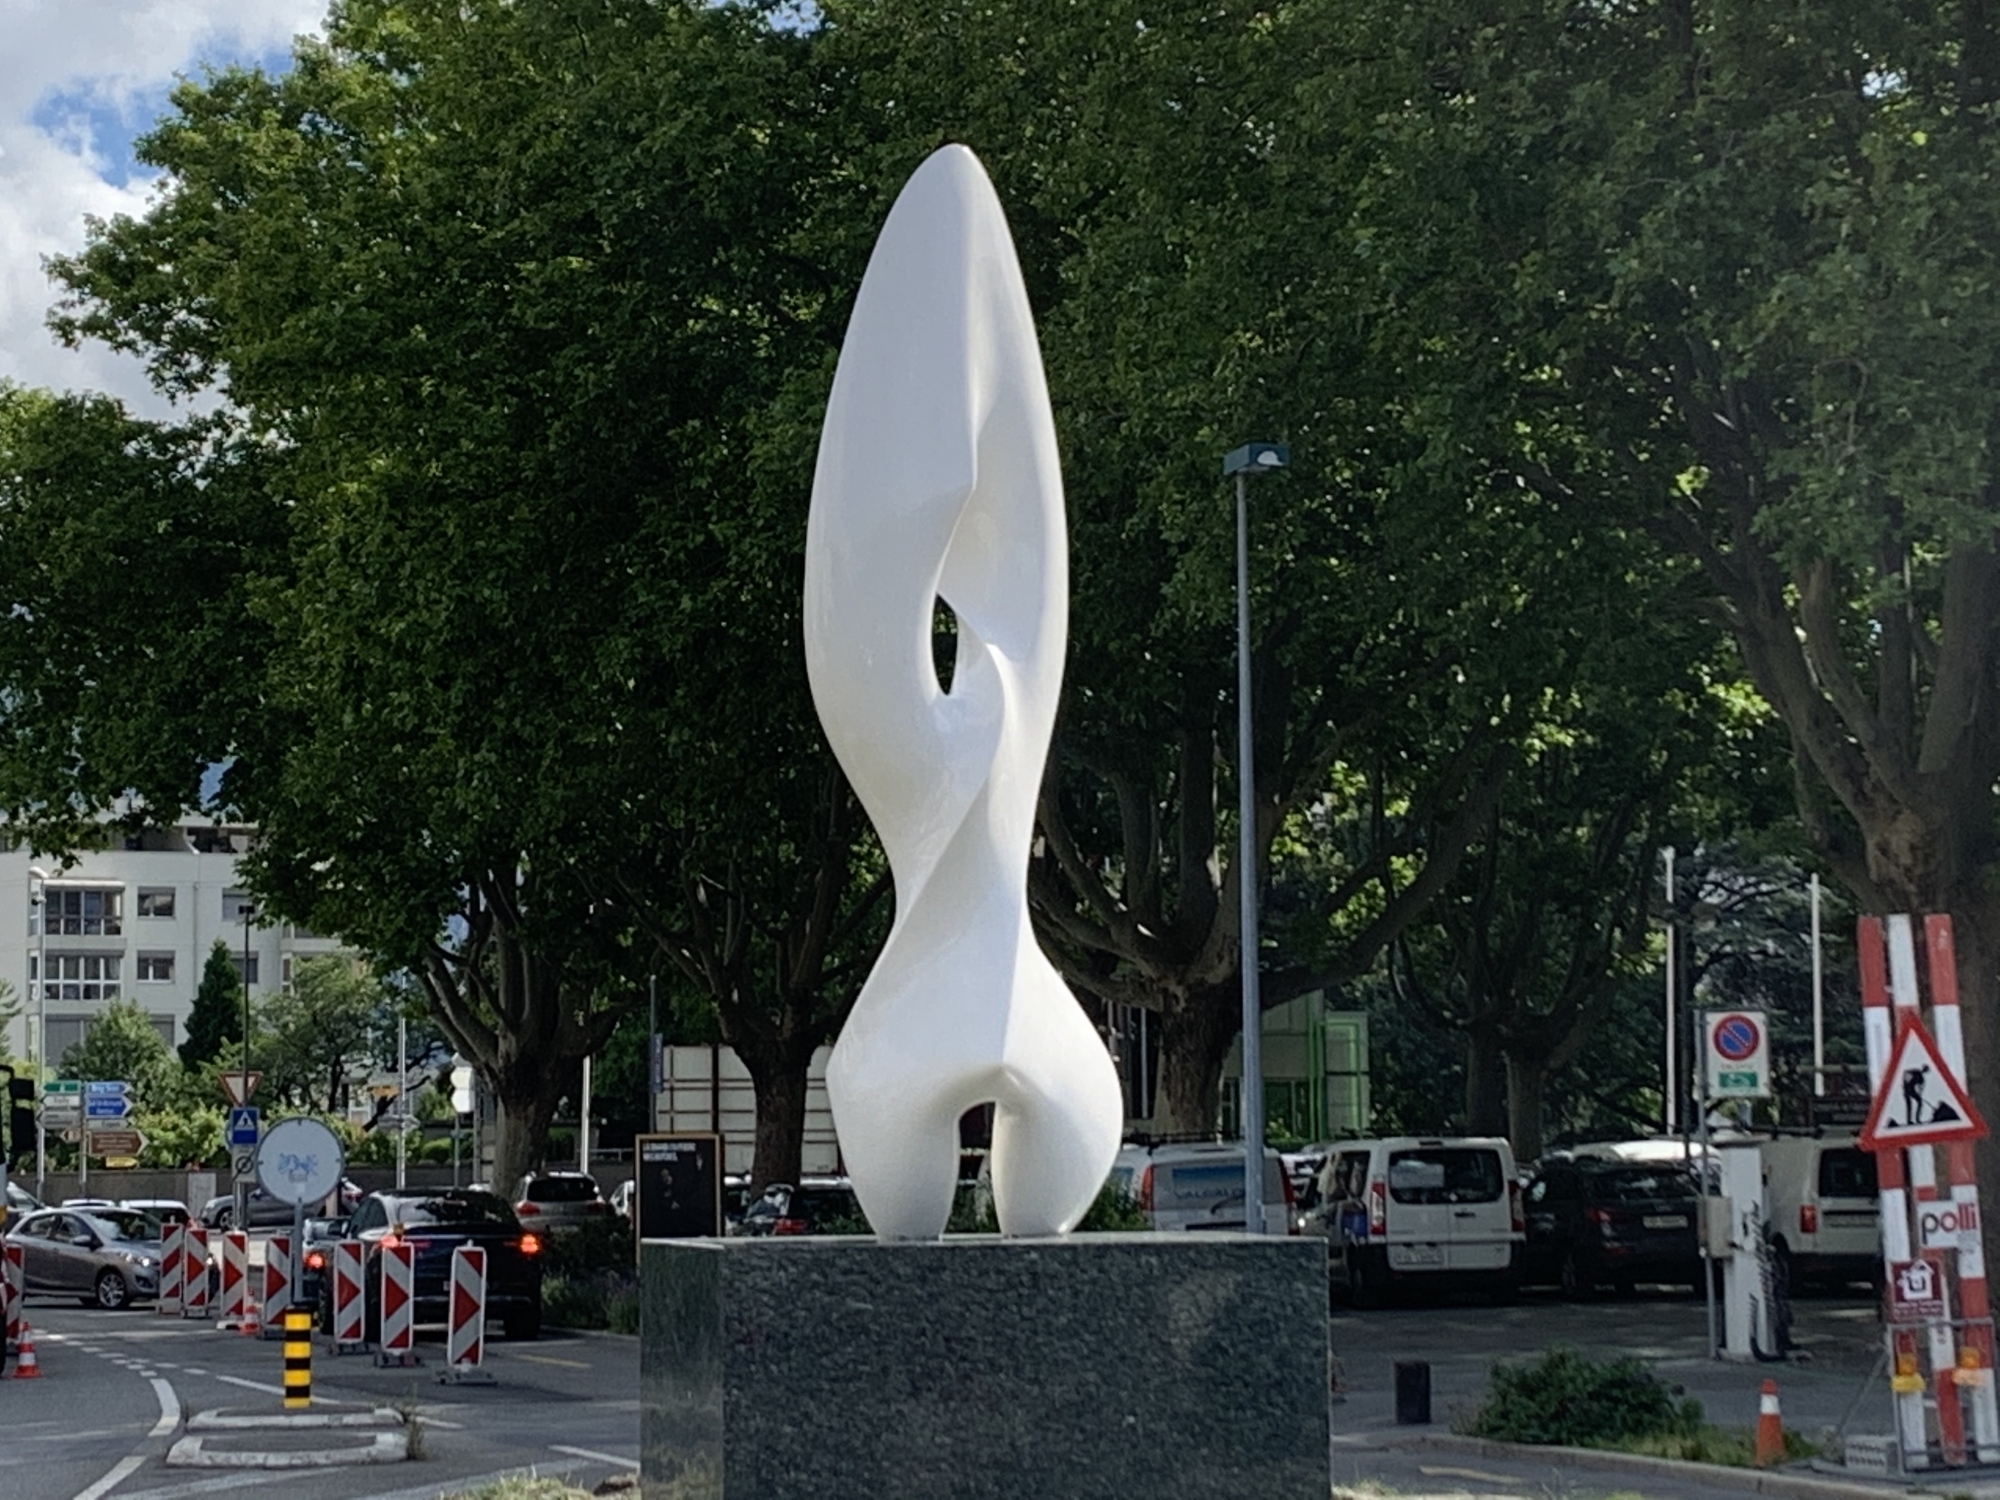 La sculpture Pensée de Antoine Poncet trône désormais sur le giratoire de La Louve, au coeur de la ville de Martigny, dans un quartier en pleine mutation